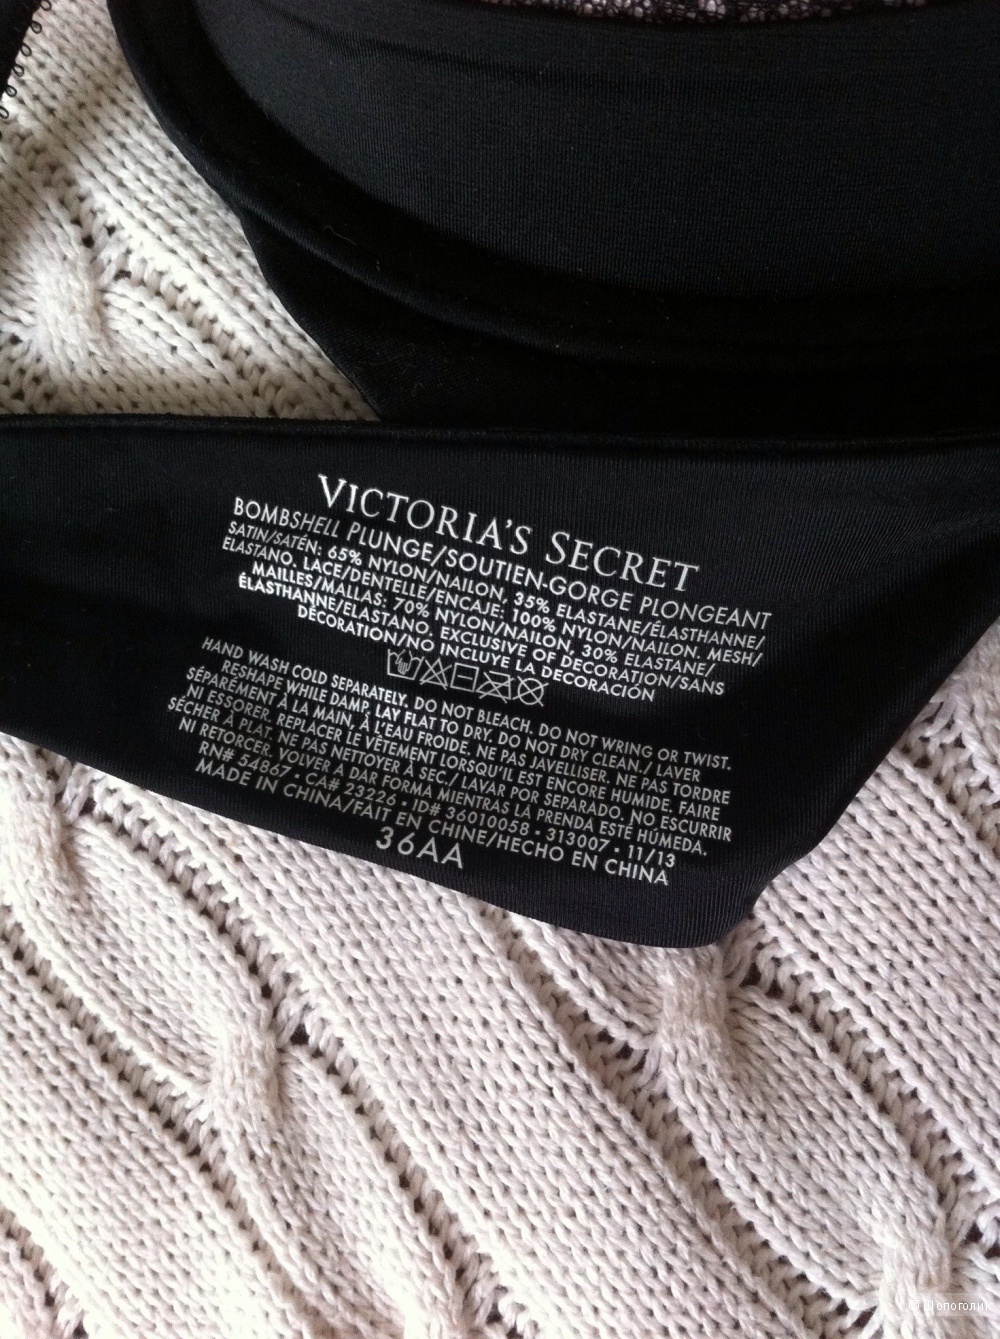 Бюстгальтер Victoria's Secret из коллекции Bombshell, новый, размер 36 АА